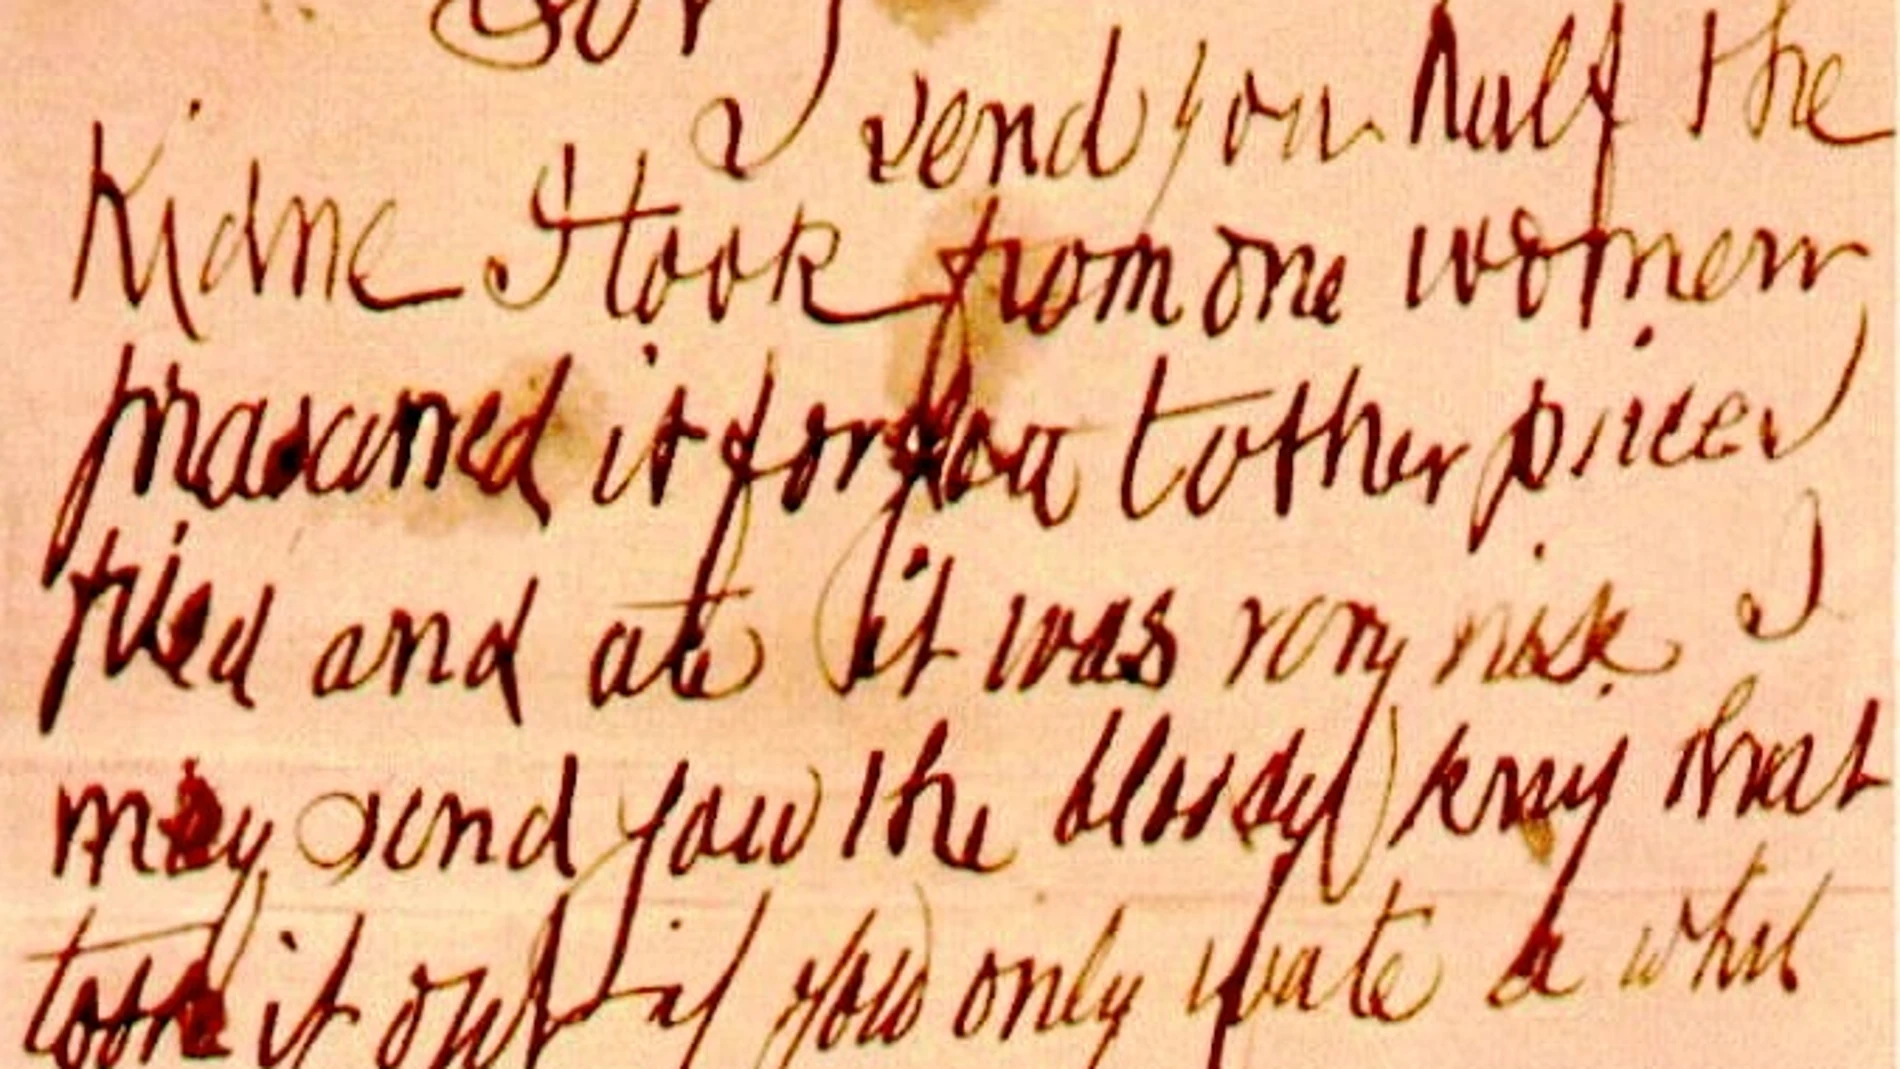 Una de las cartas escritas con sangre que hizo llegar a la policía el supuesto asesino del barrio de Whitechapel, Jack el destripador